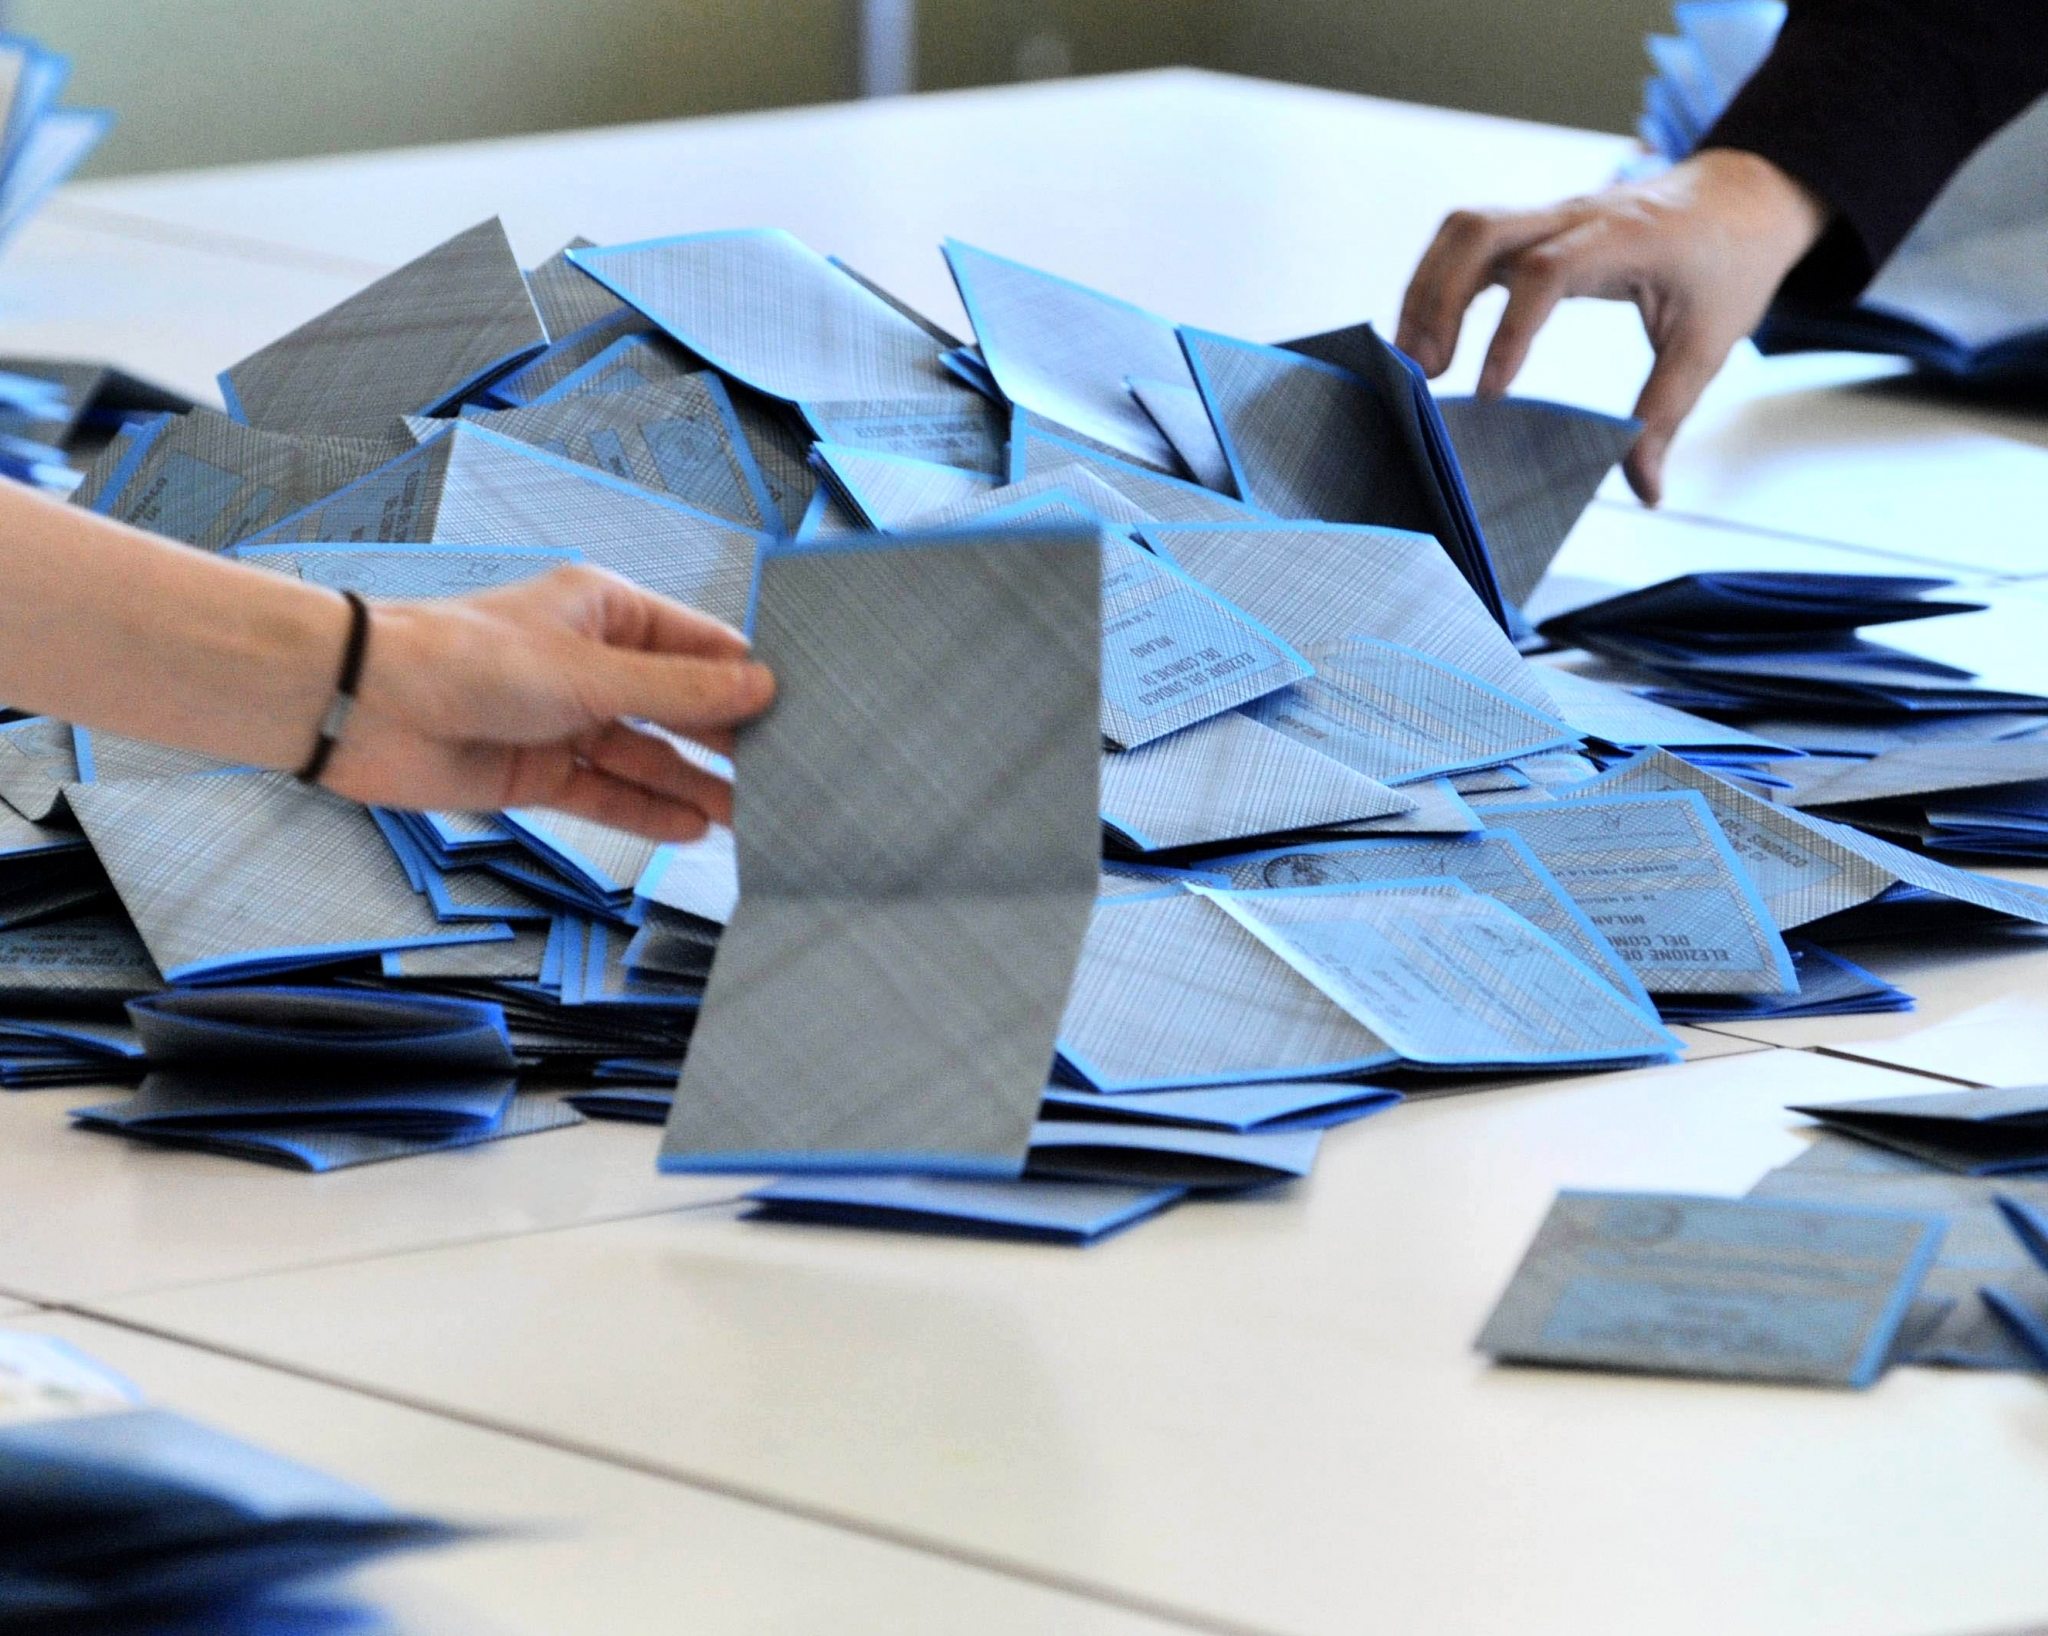 Schede elettorali, Carpi primo nell'ordine sorteggiato in Prefettura